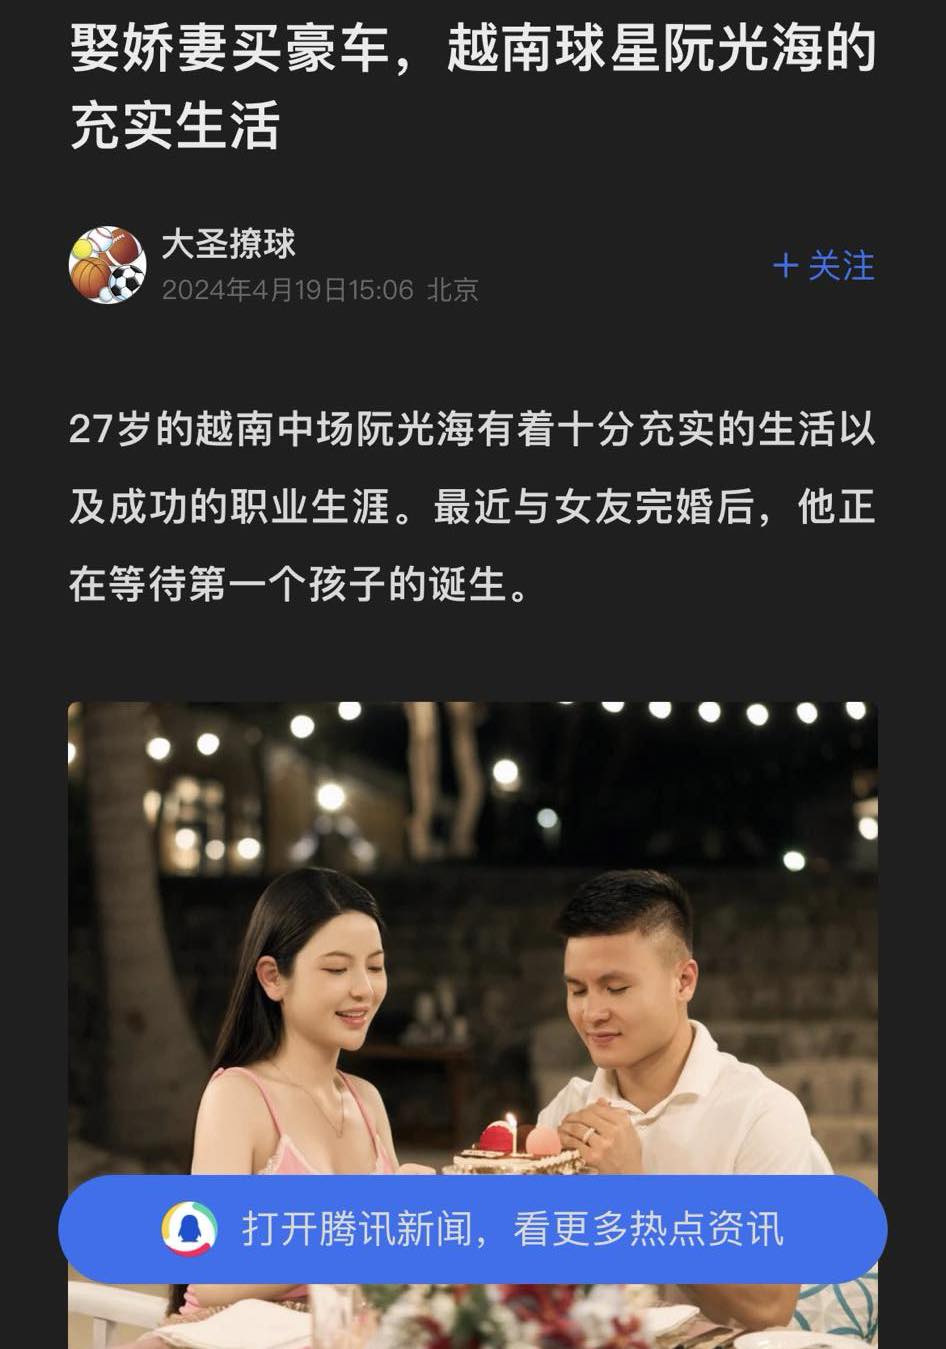 Quang Hải là cầu thủ Việt hiếm hoi được báo Trung Quốc tâng bốc: 'Cưới vợ đẹp, mua xe sang, cuộc sống viên mãn' - ảnh 2